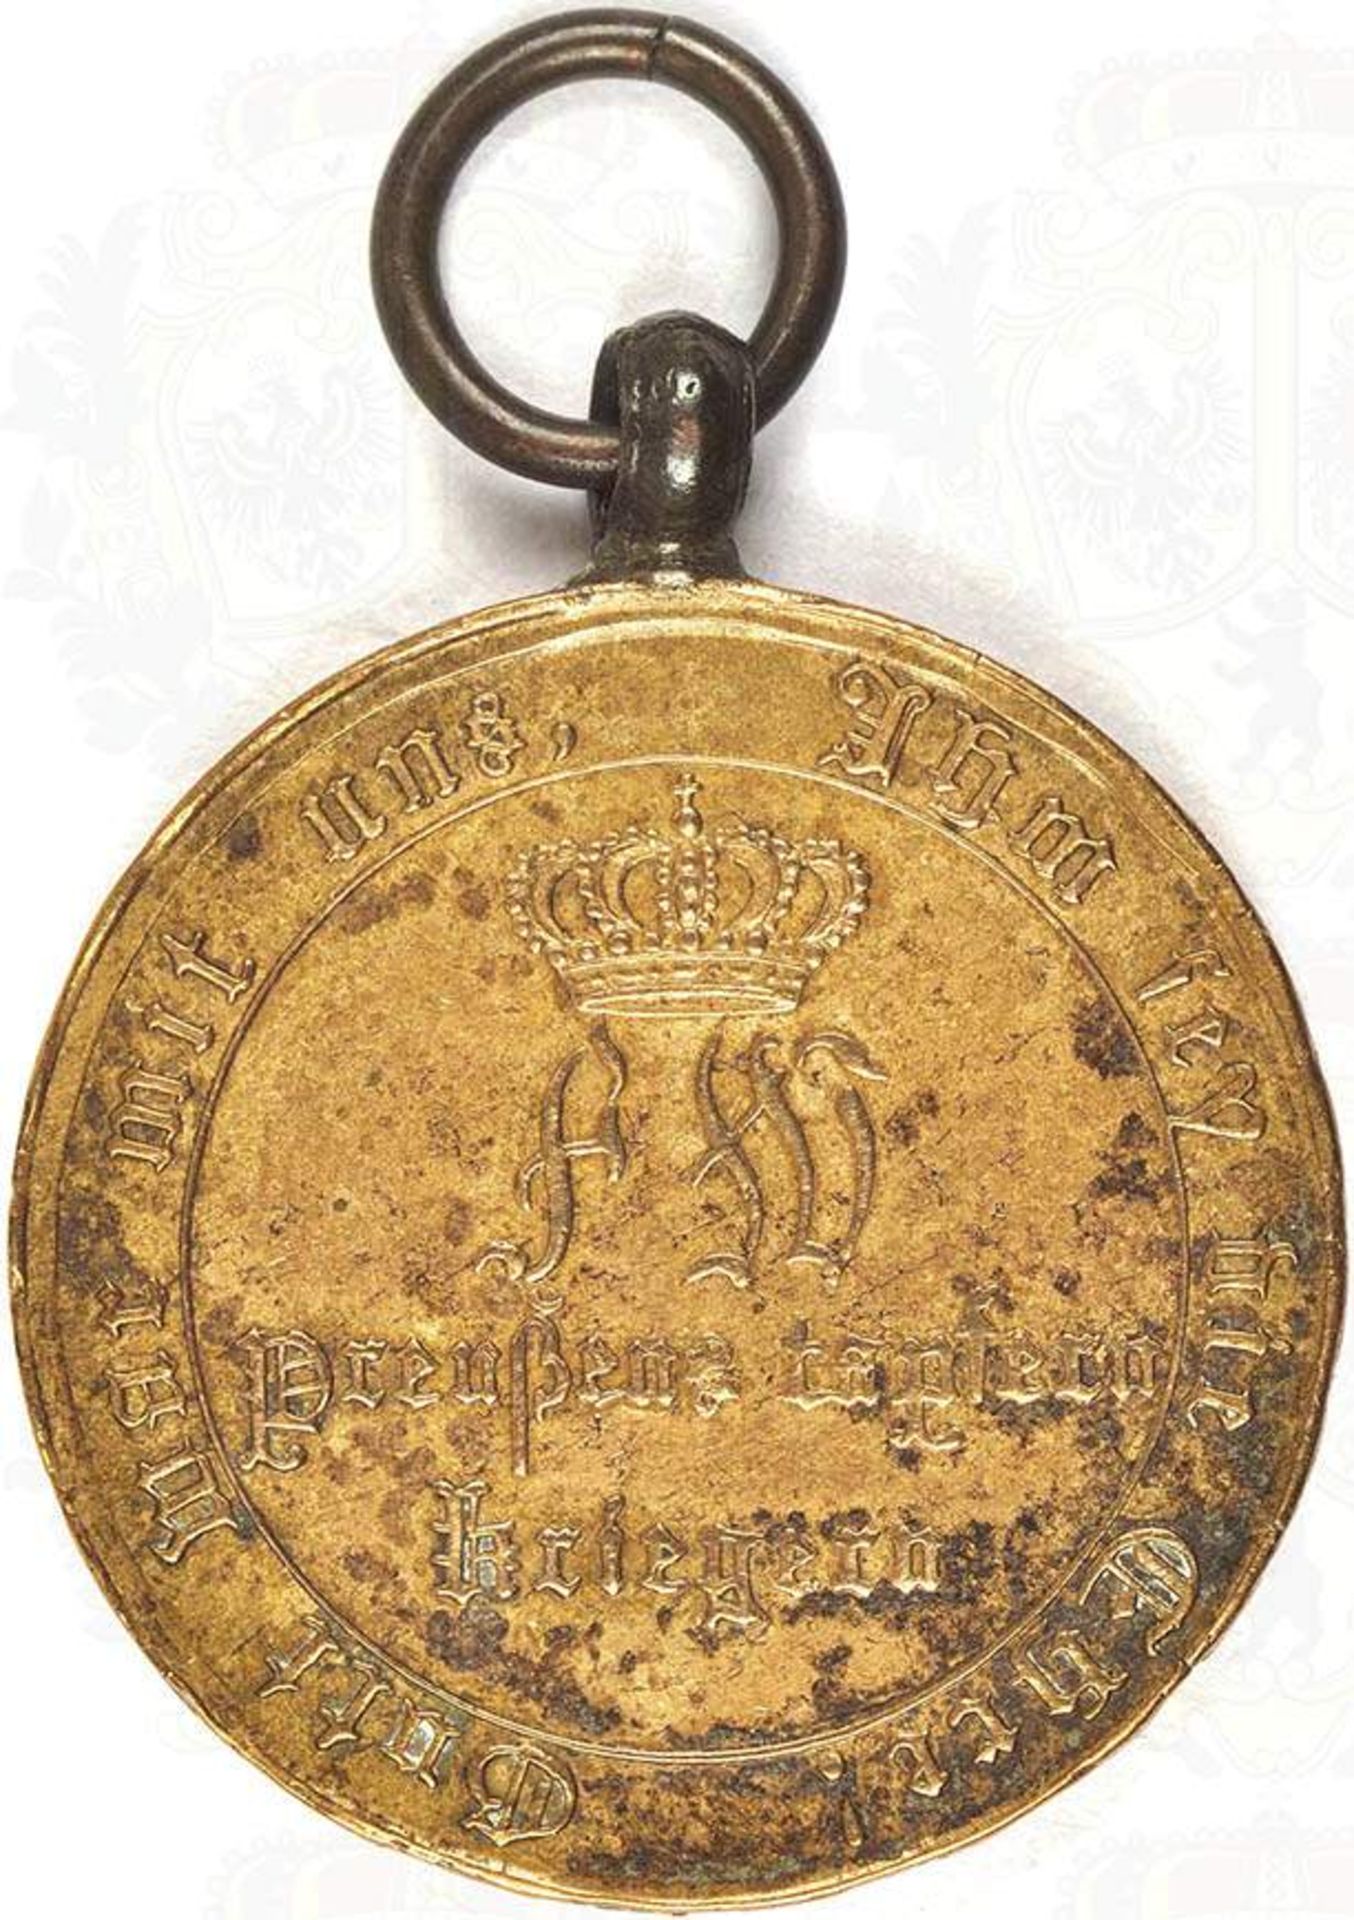 KRIEGSDENKMÜNZE 1815 FÜR KOMBATTANTEN, Bronze, m. Randschrift, Trage- u. Altersspuren < 1011811F,